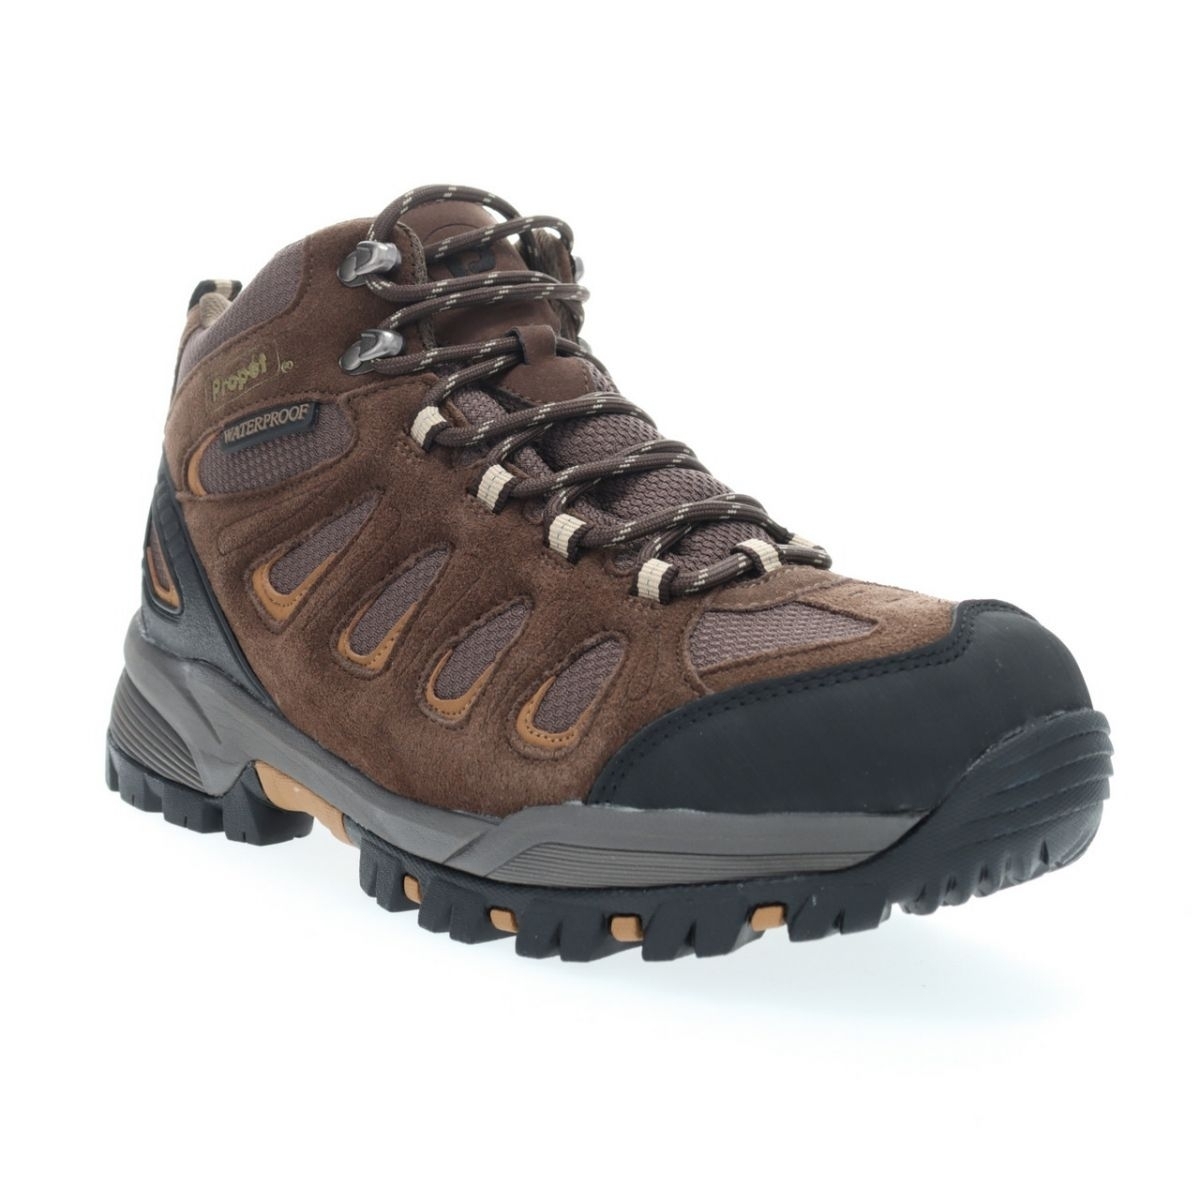 Propet Men's Ridge Walker Hiking Boot Brown - M3599BR 8 XX US Men BROWN - BROWN, 9.5